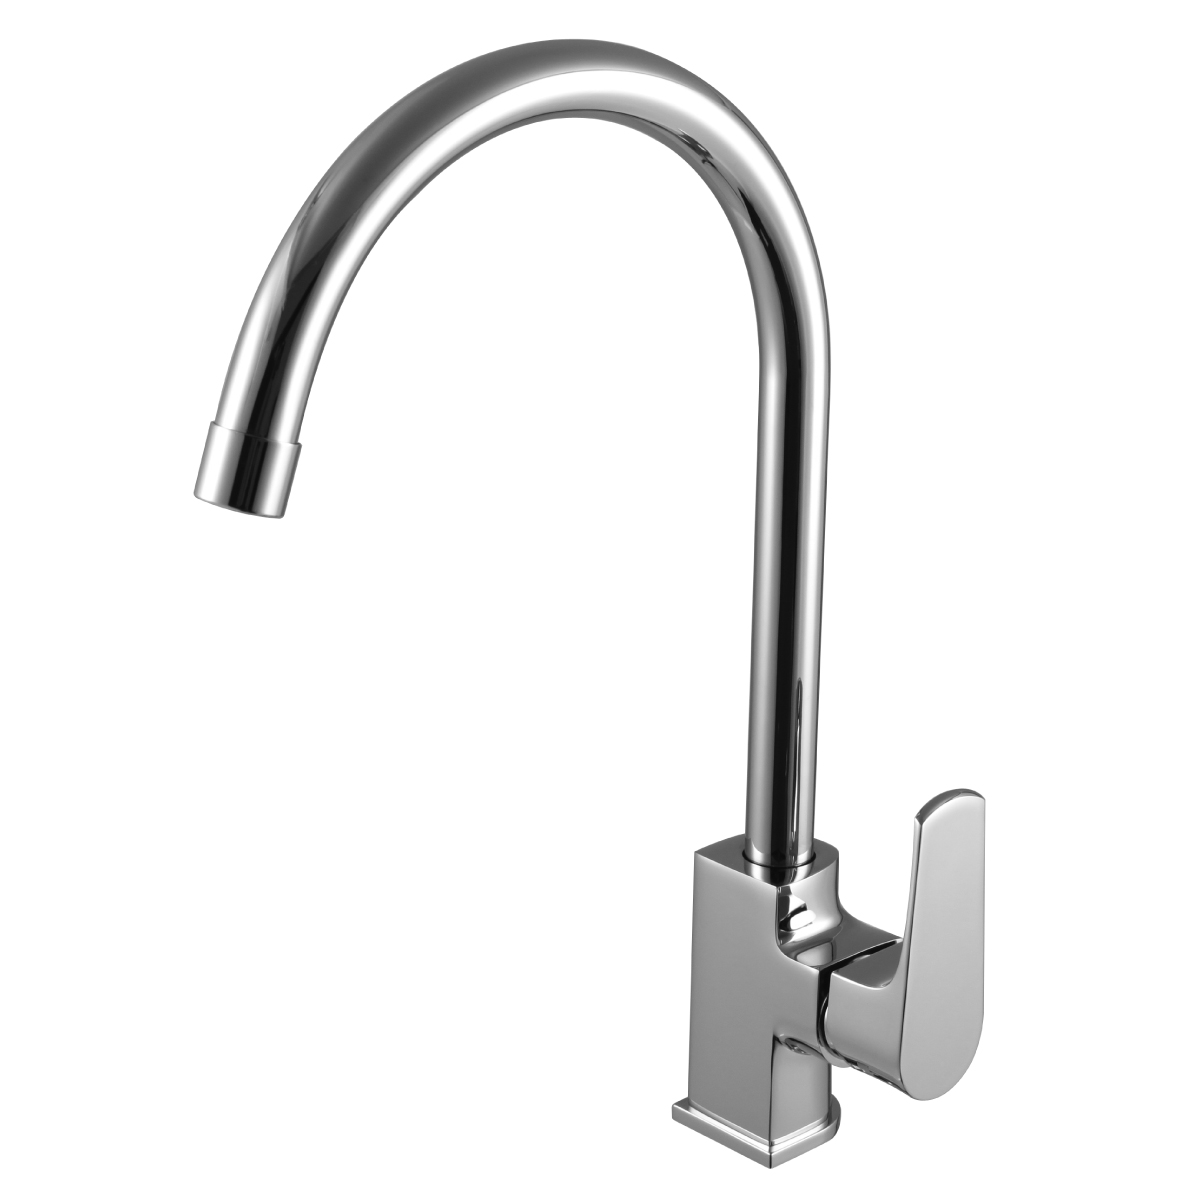 LM1605C Kitchen faucet
with swivel spout